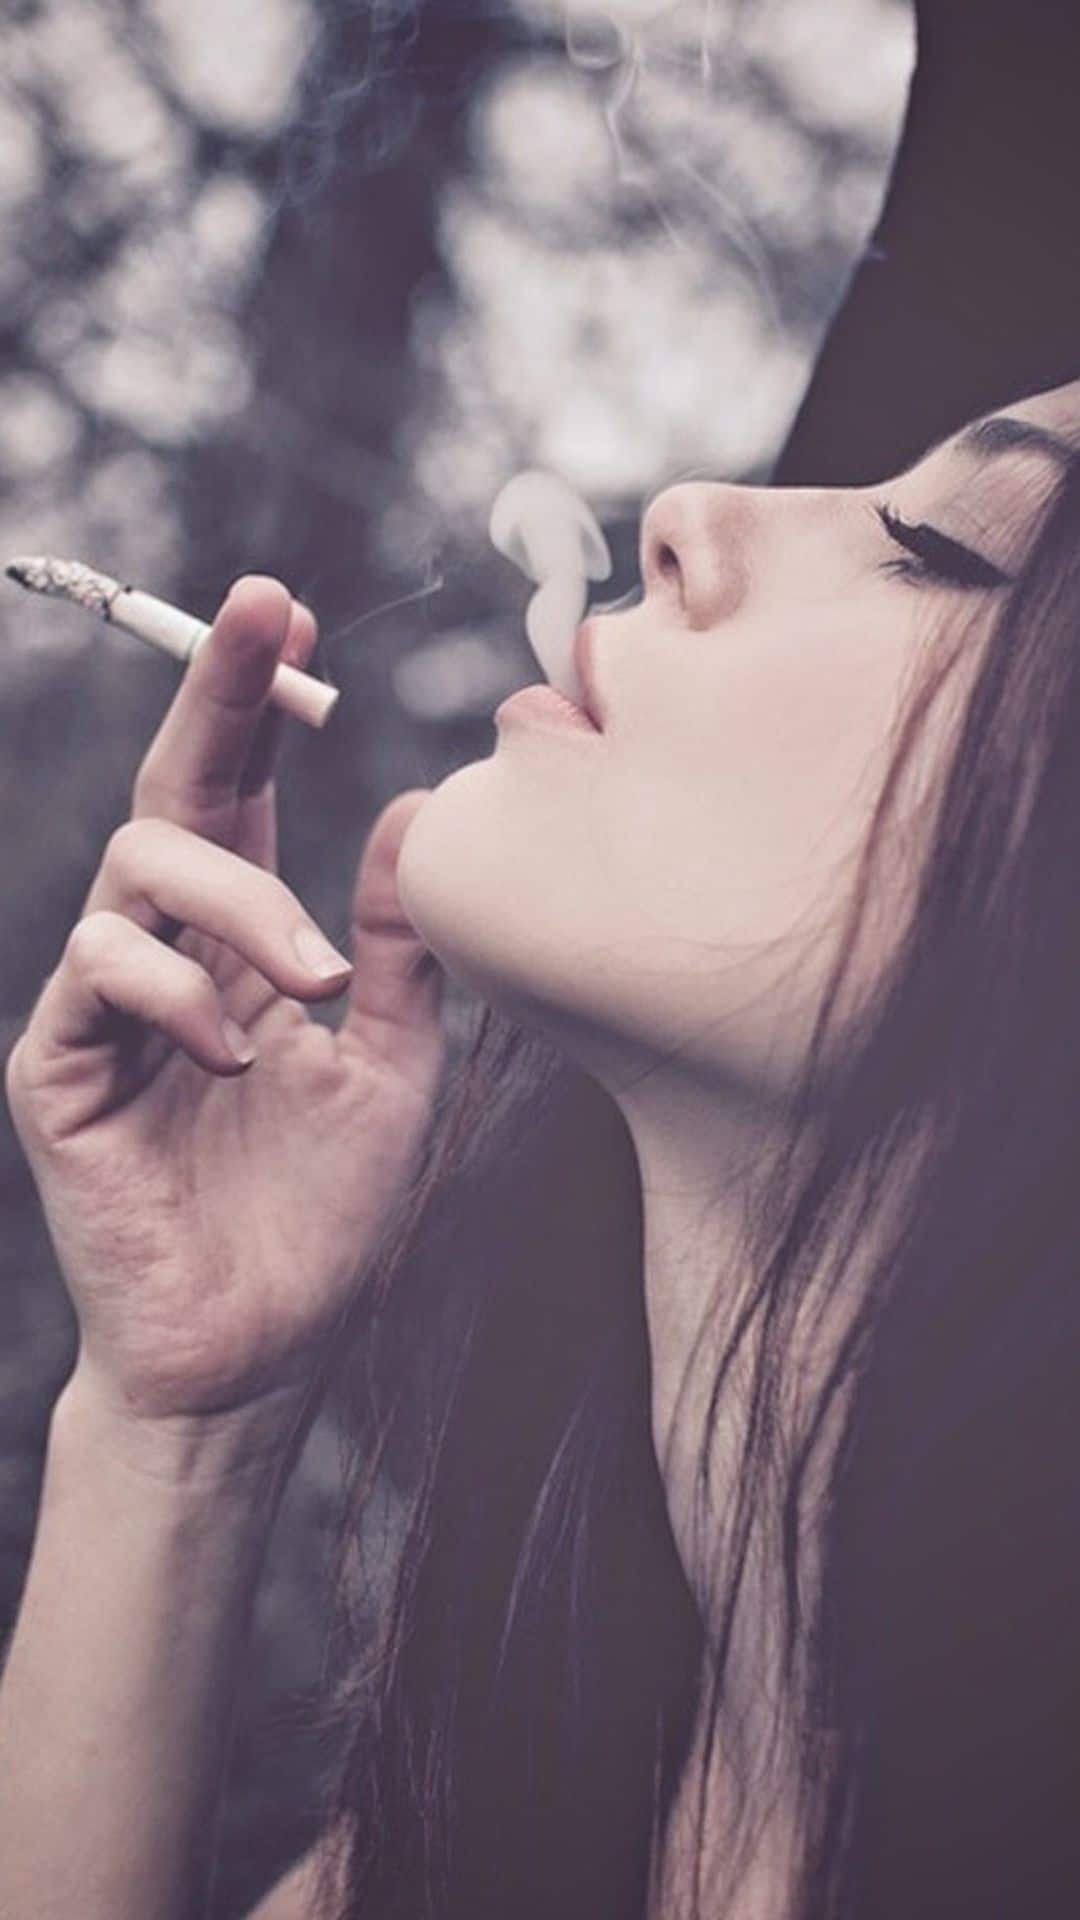 Top hình con gái hút thuốc cực chất, tâm trạng